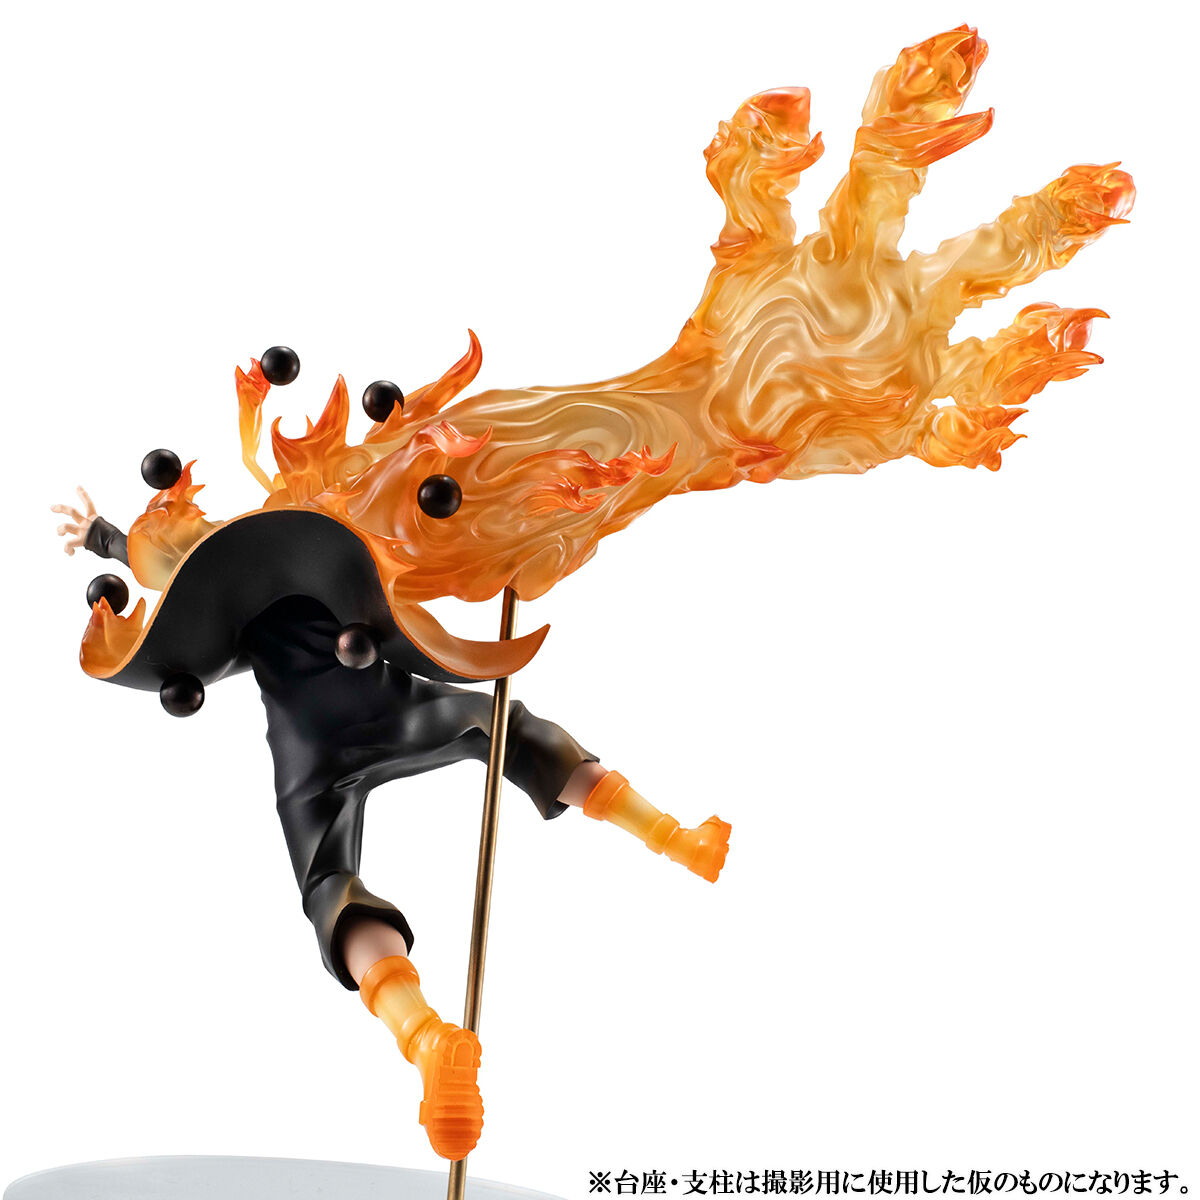 NARUTO-ナルト- 疾風伝「うずまきナルト 六道仙人モード G.E.M.15th Anniversary ver.」のフィギュア画像